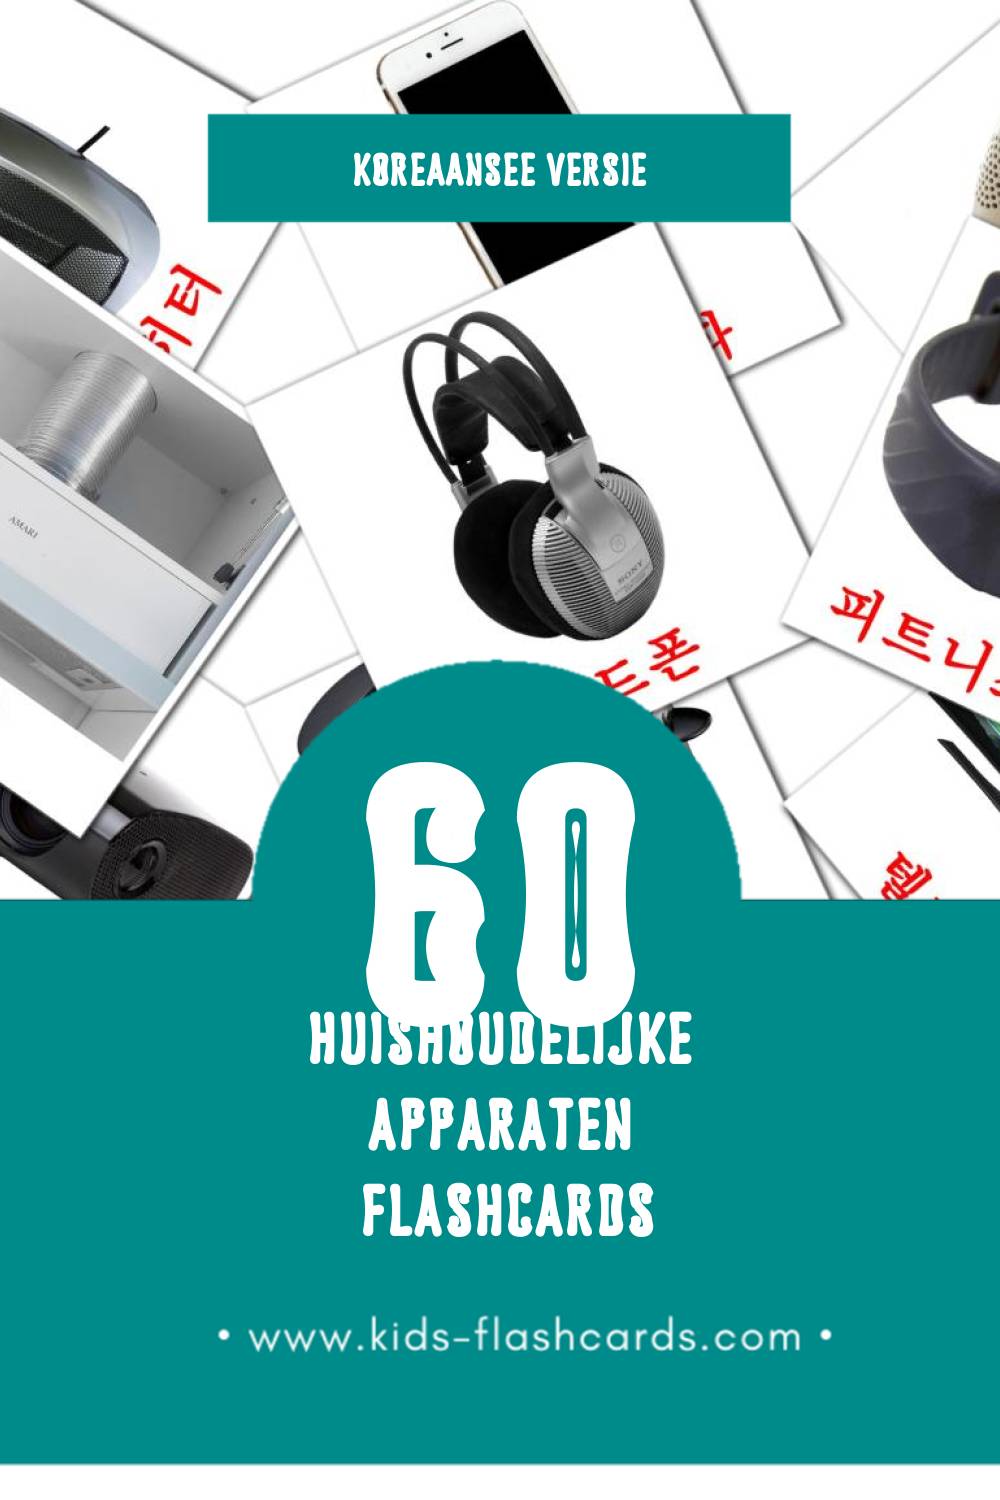 Visuele 가전제품 Flashcards voor Kleuters (60 kaarten in het Koreaanse)